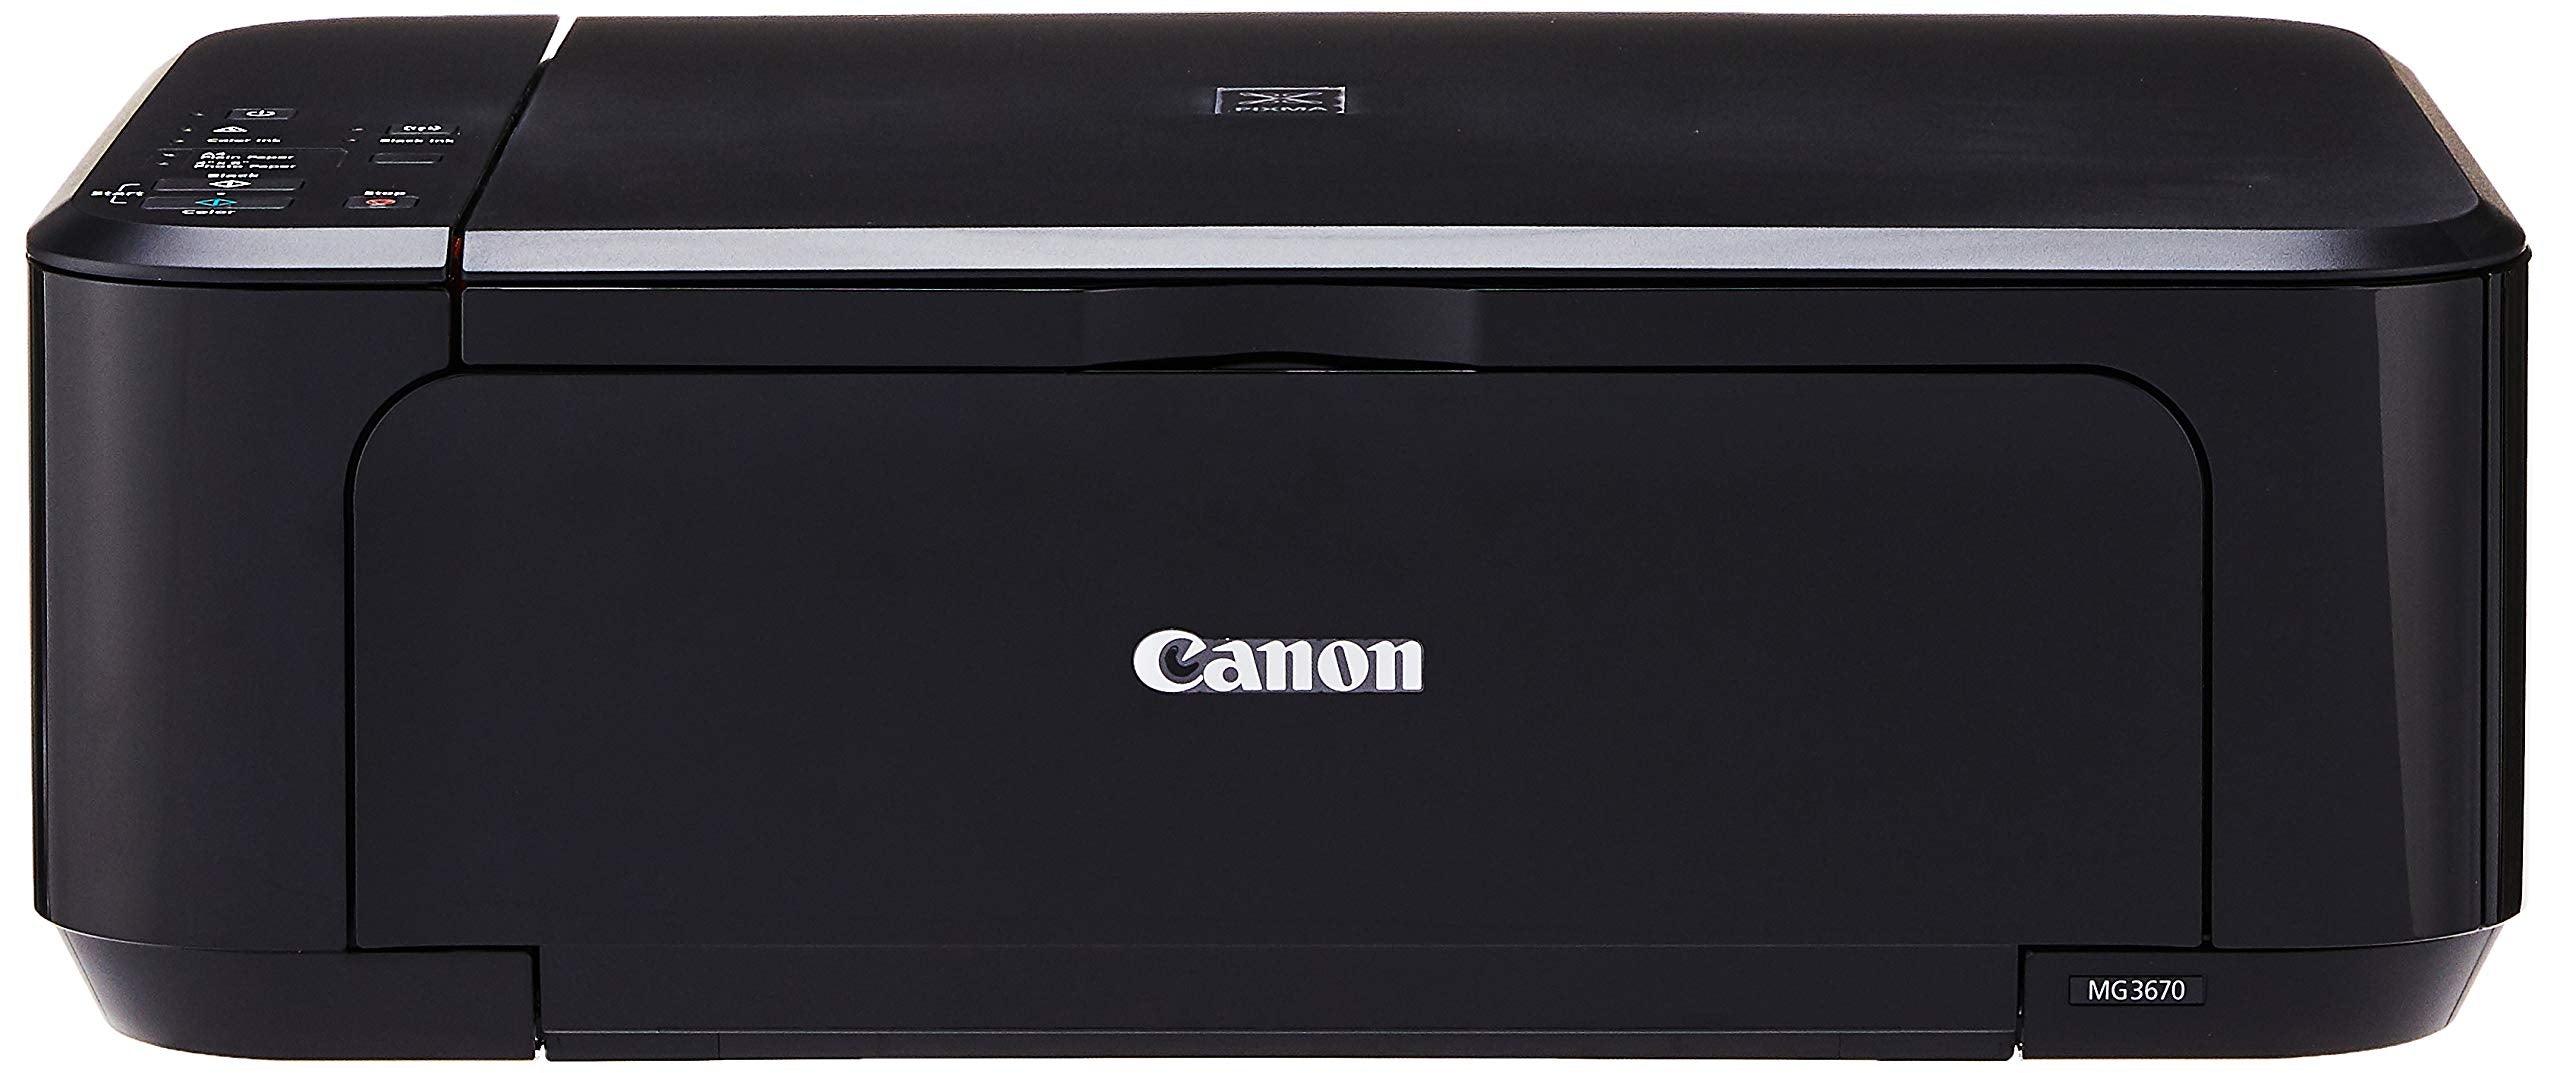 CANON Pixma MG3670 Printer